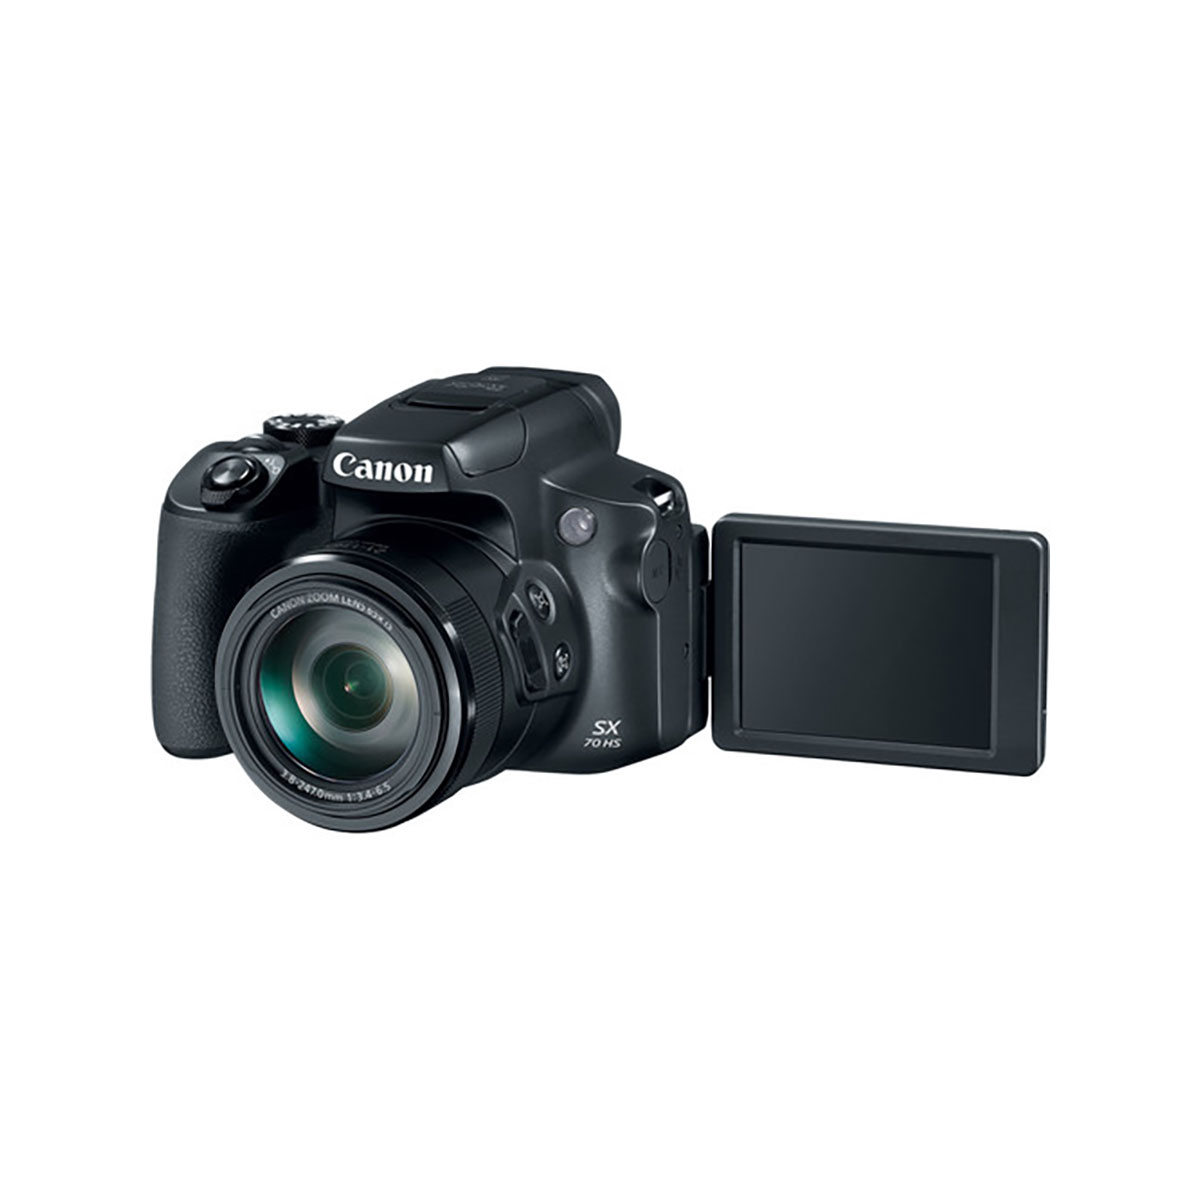 Canon - Powershot SX70 HS, Black